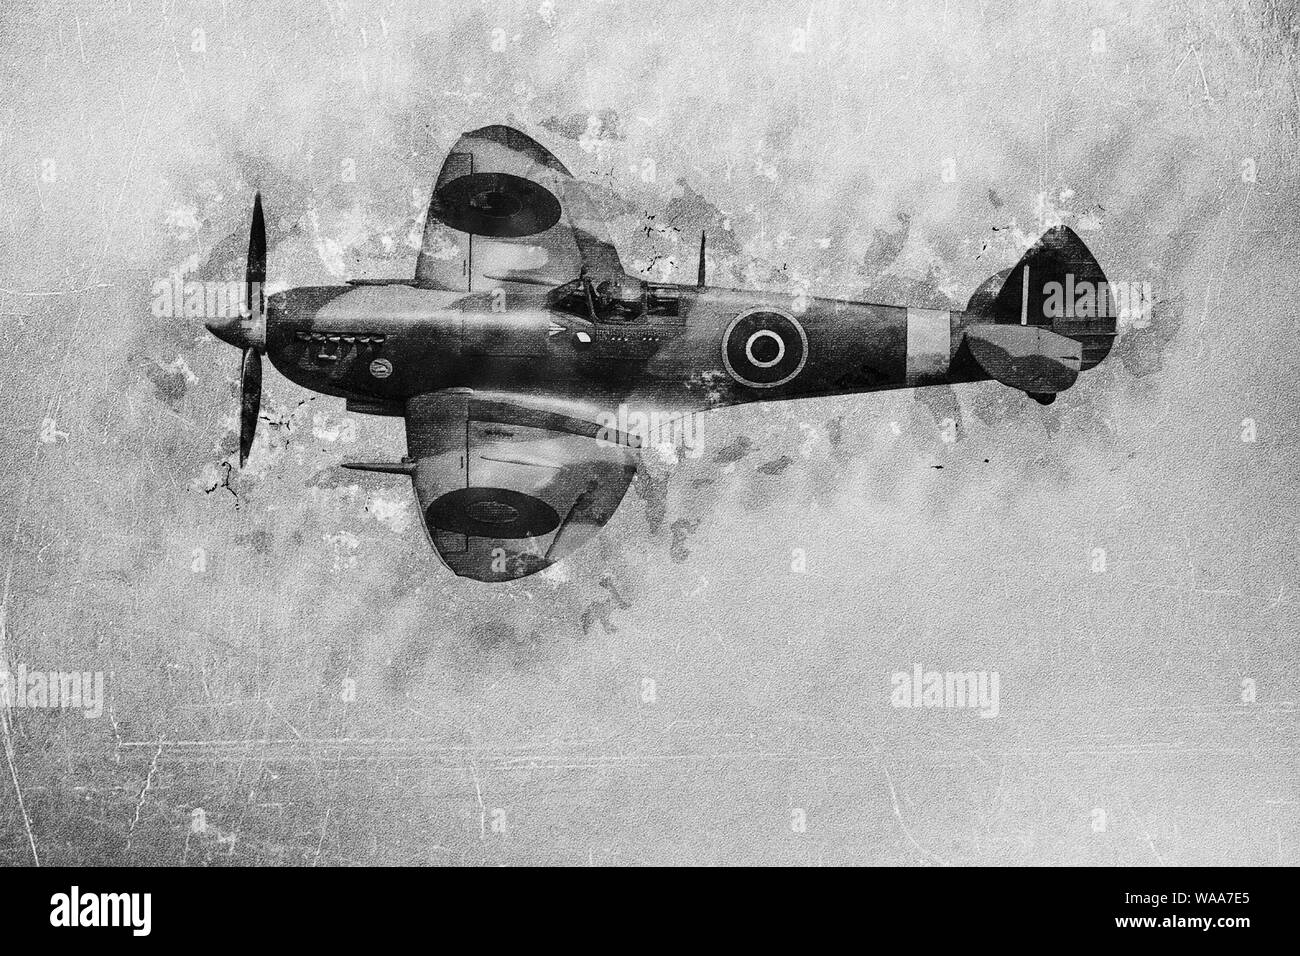 Migliorate digitalmente immagine di un Royal Air Force il Supermarine Spitfire in volo Foto Stock